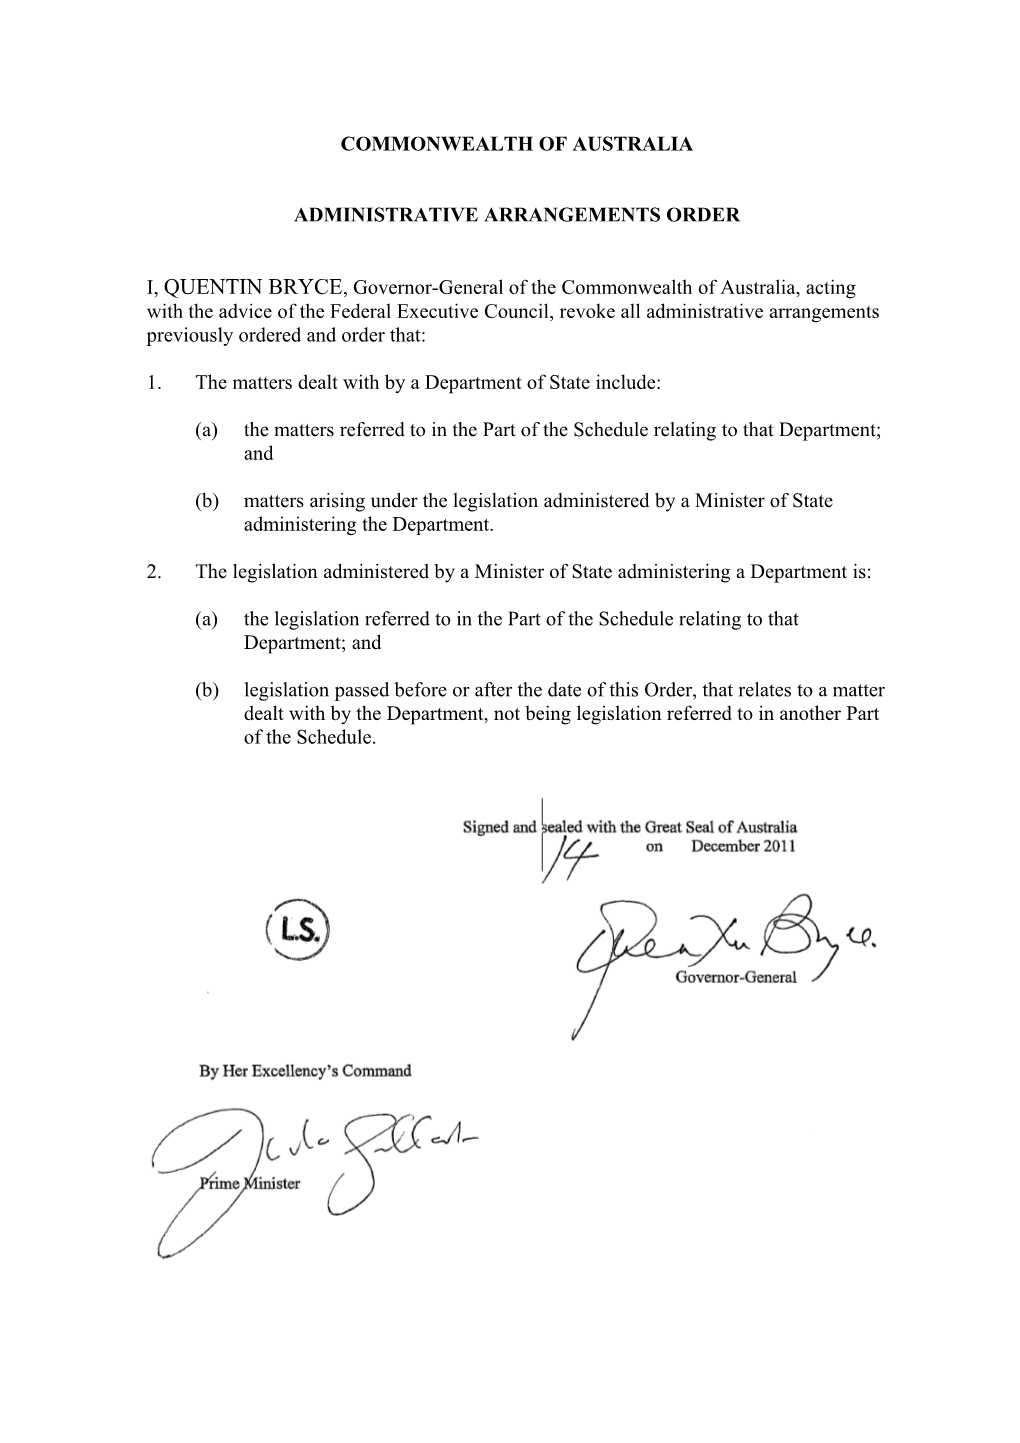 Administrative Arrangements Order - 14 December 2011